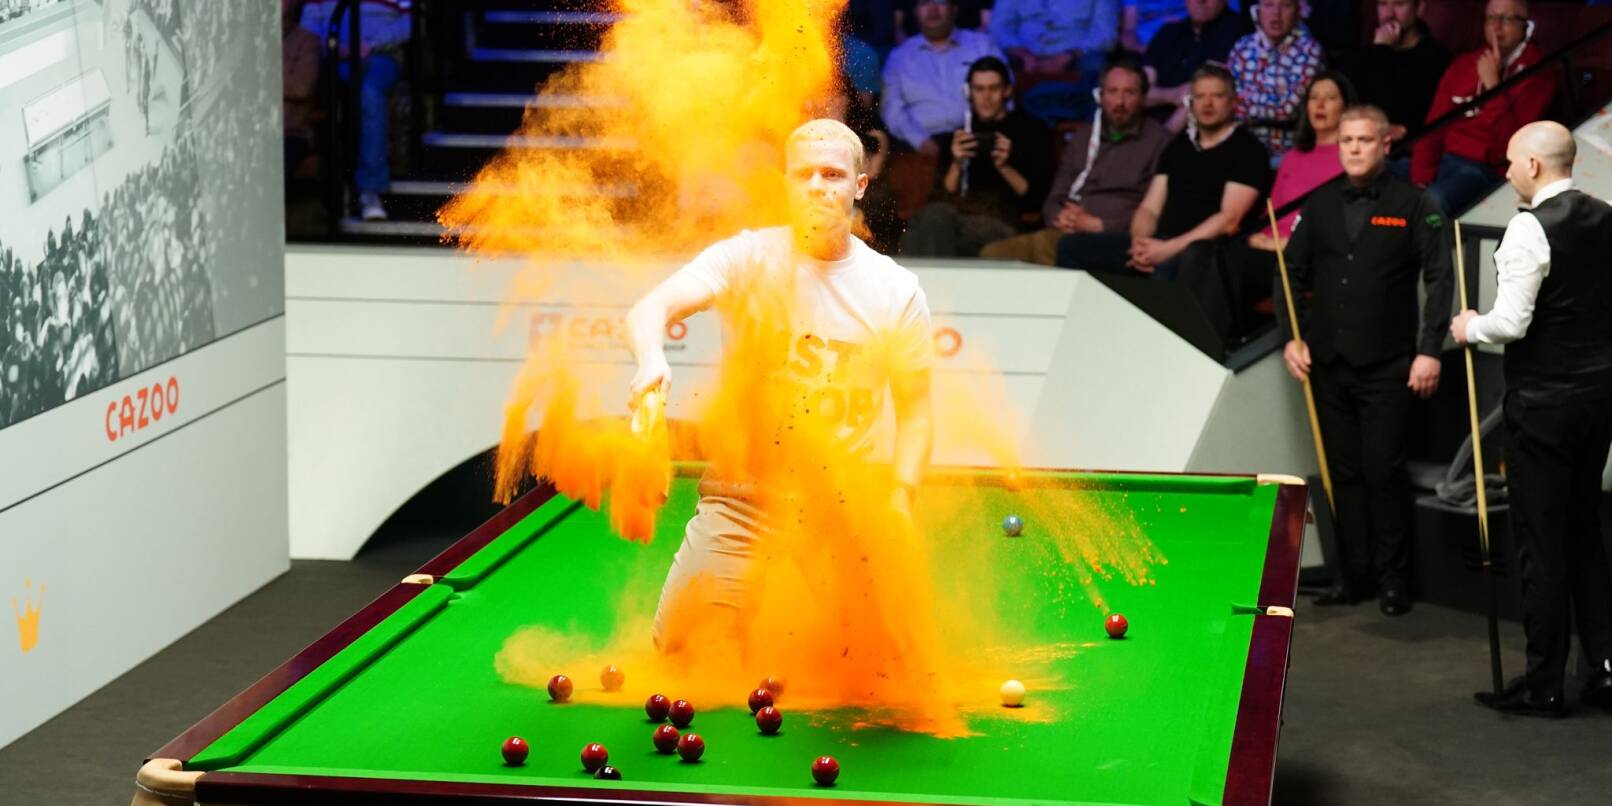 Ein «Just Stop Oil»-Demonstrant springt während der Snooker-WM auf den Tisch und wirft orangenes Pulver. Die Partie zwischen Robert Milkins und Joe Perry wurde unterbrochen und der Tisch mit einem Staubsauger gereinigt.